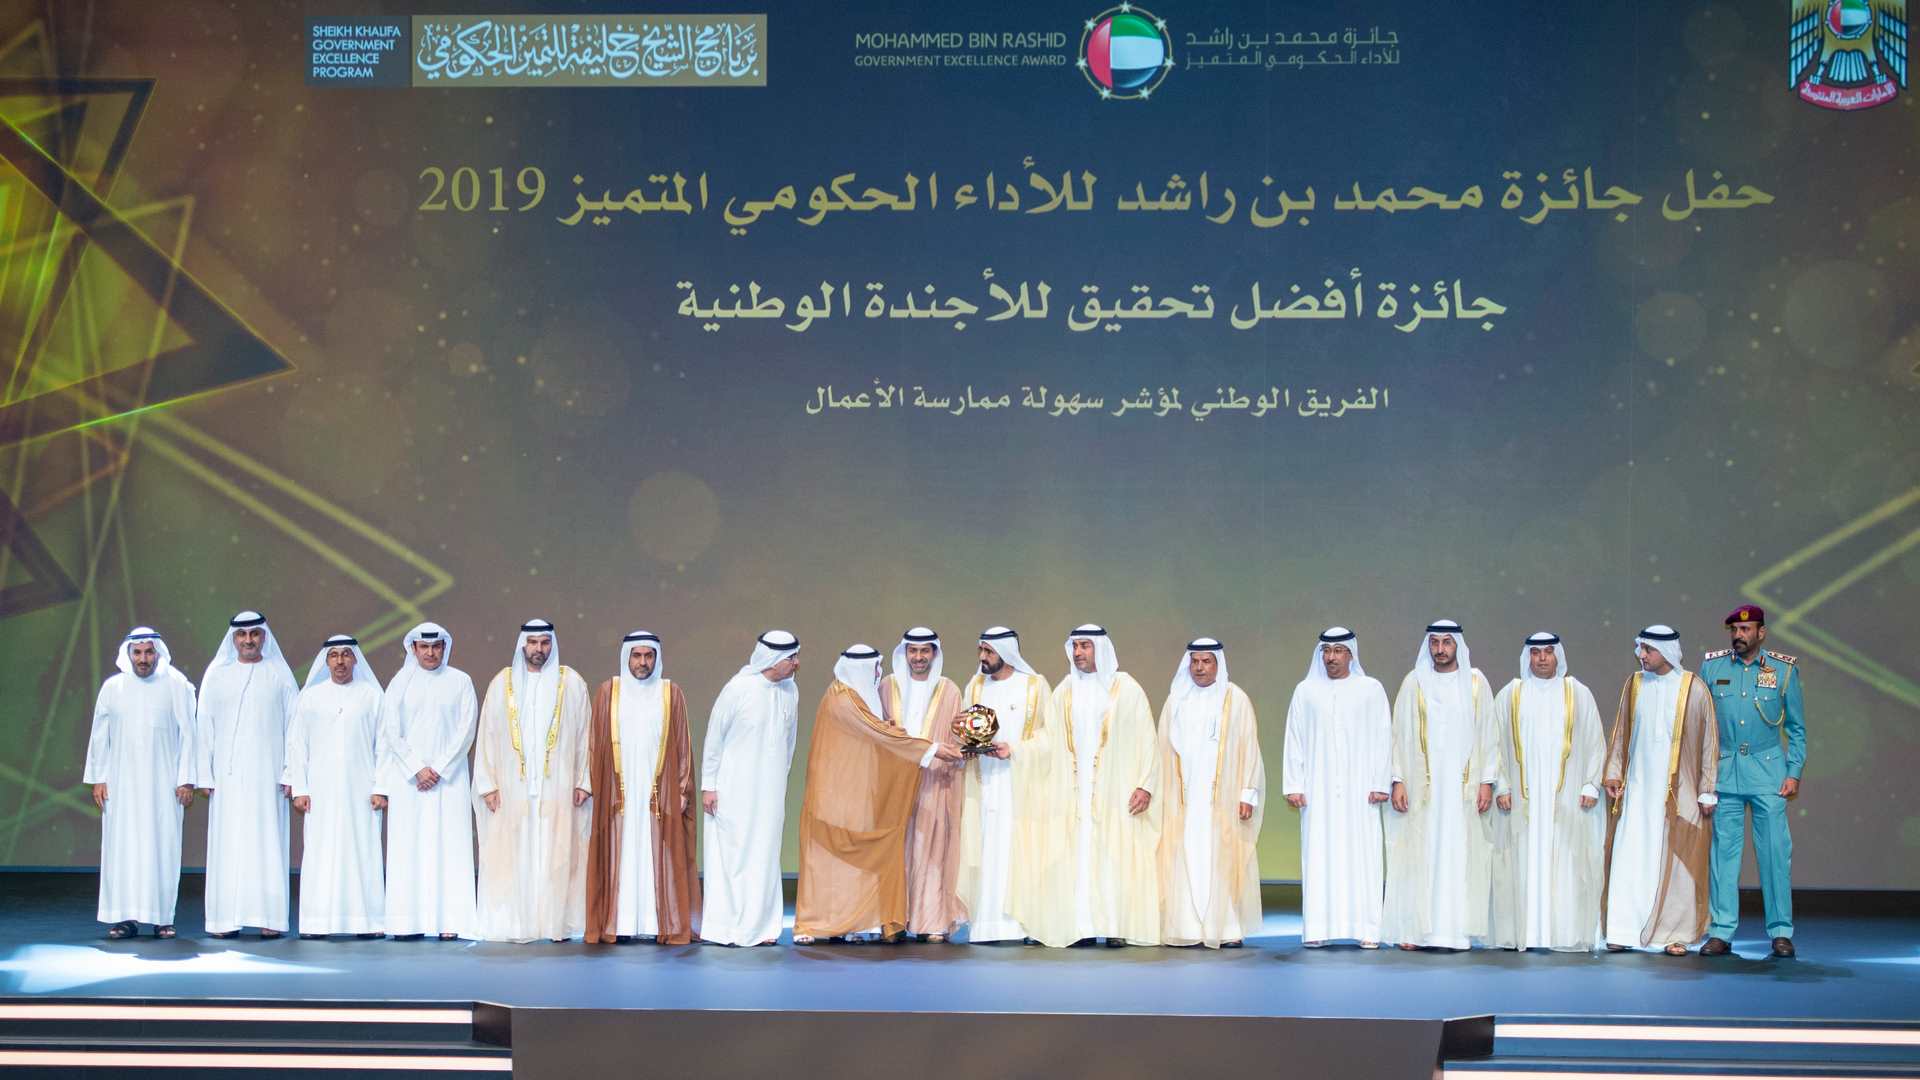  حفل جائزة محمد بن راشد للأداء الحكومي المتميز 2019